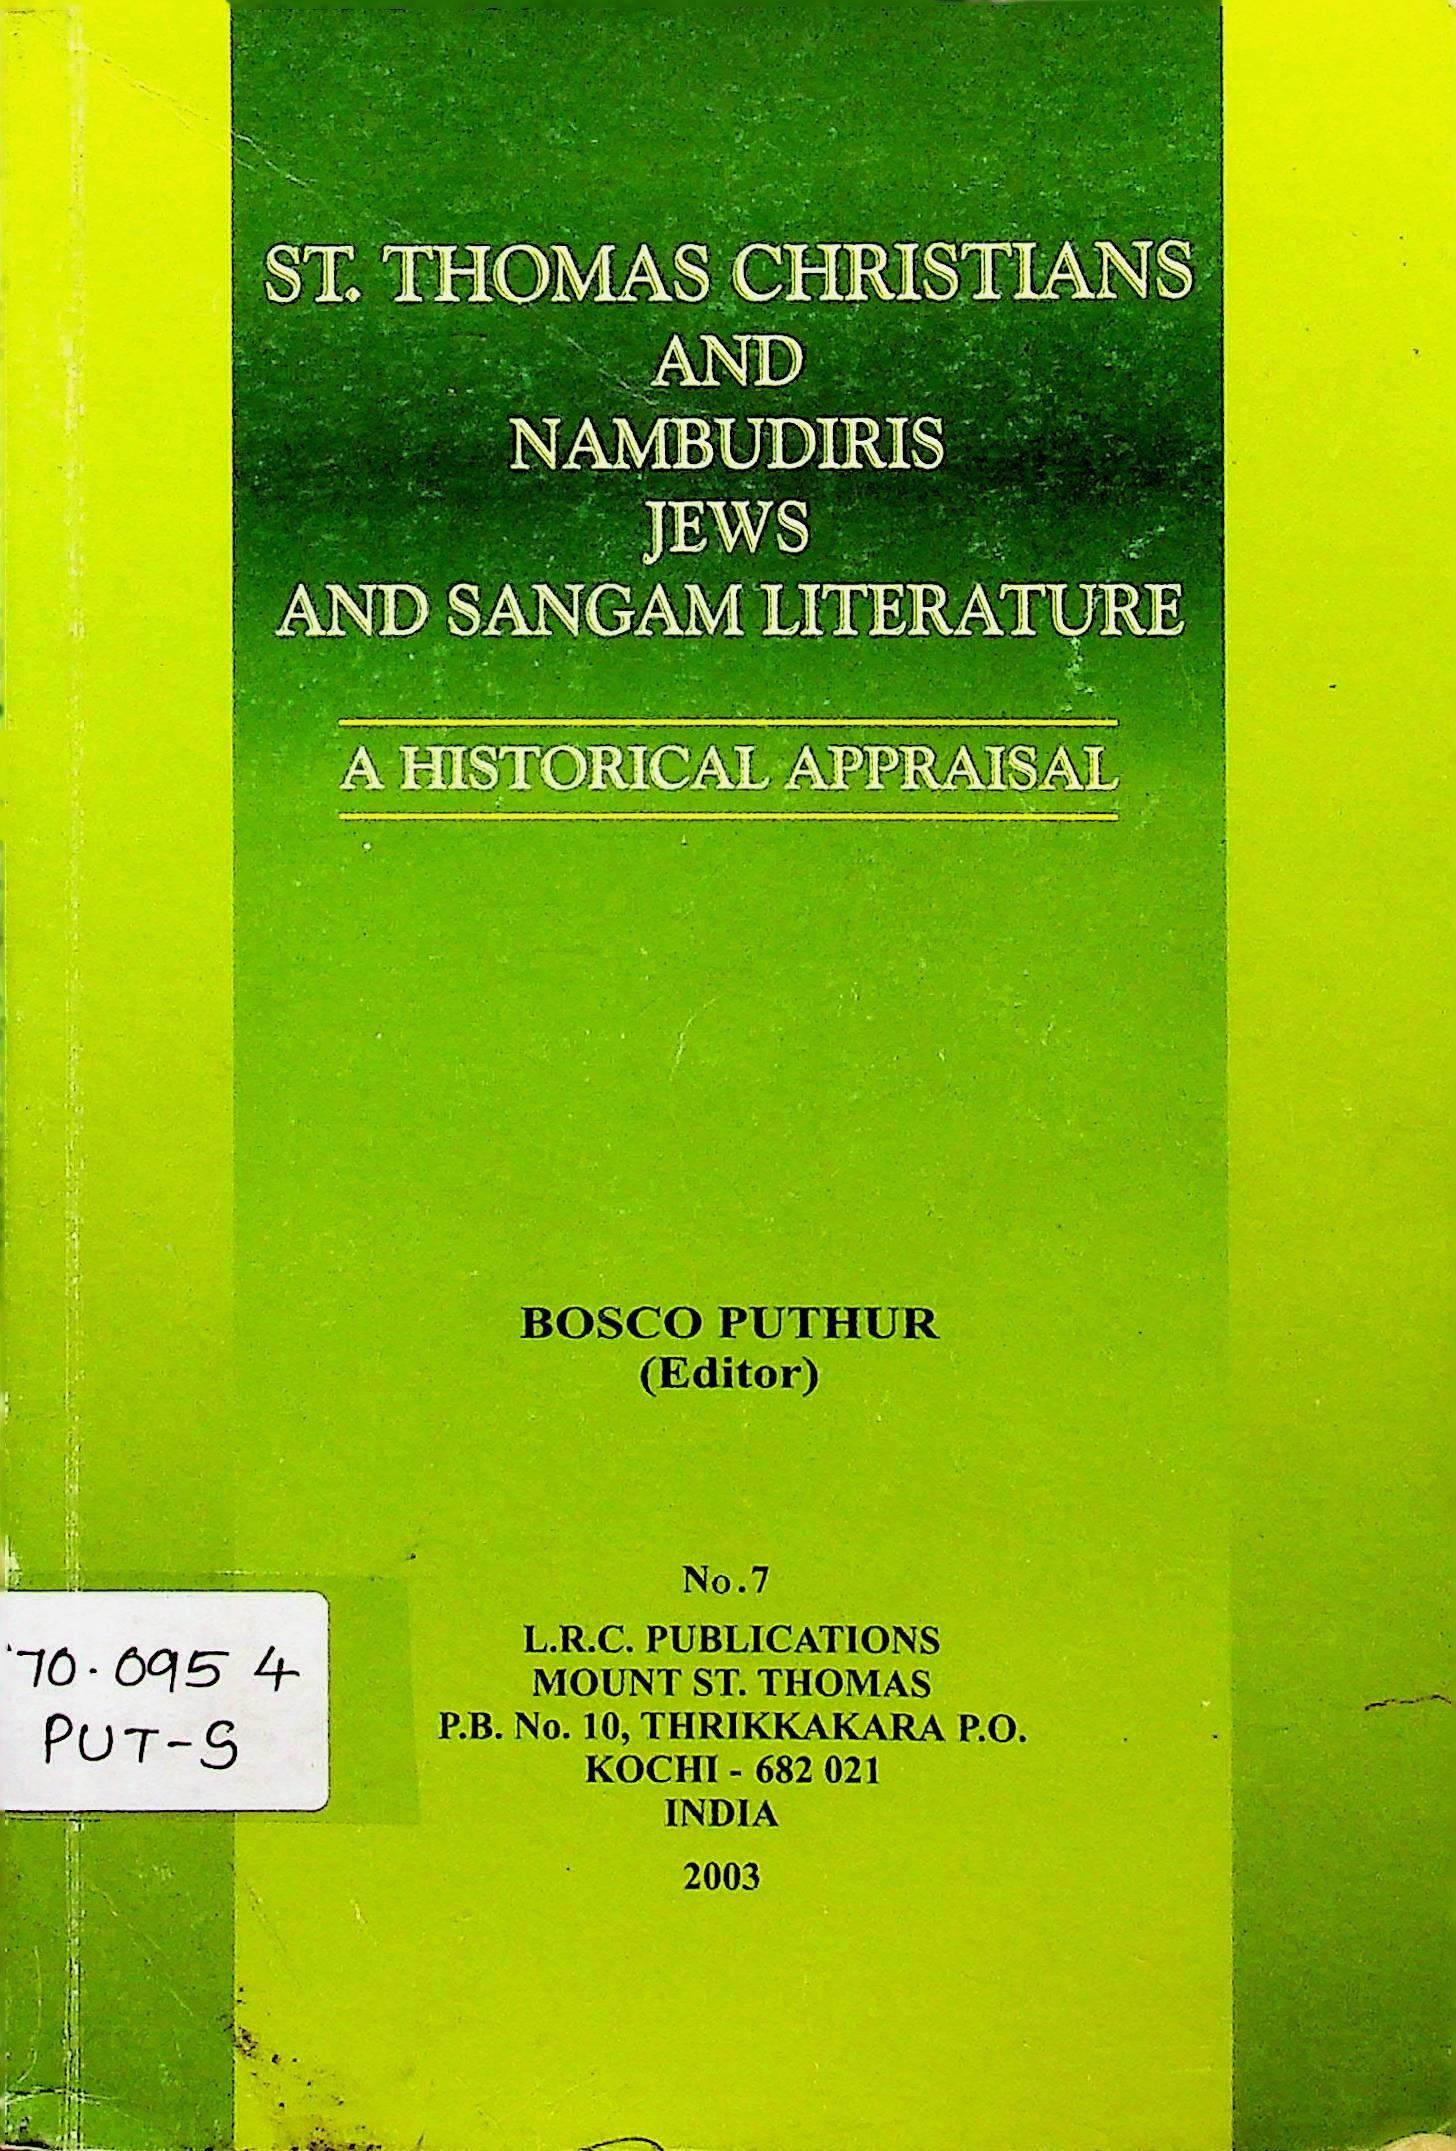 St. Thomas Christians and Nambudiris, Jews and Sangam Literature.